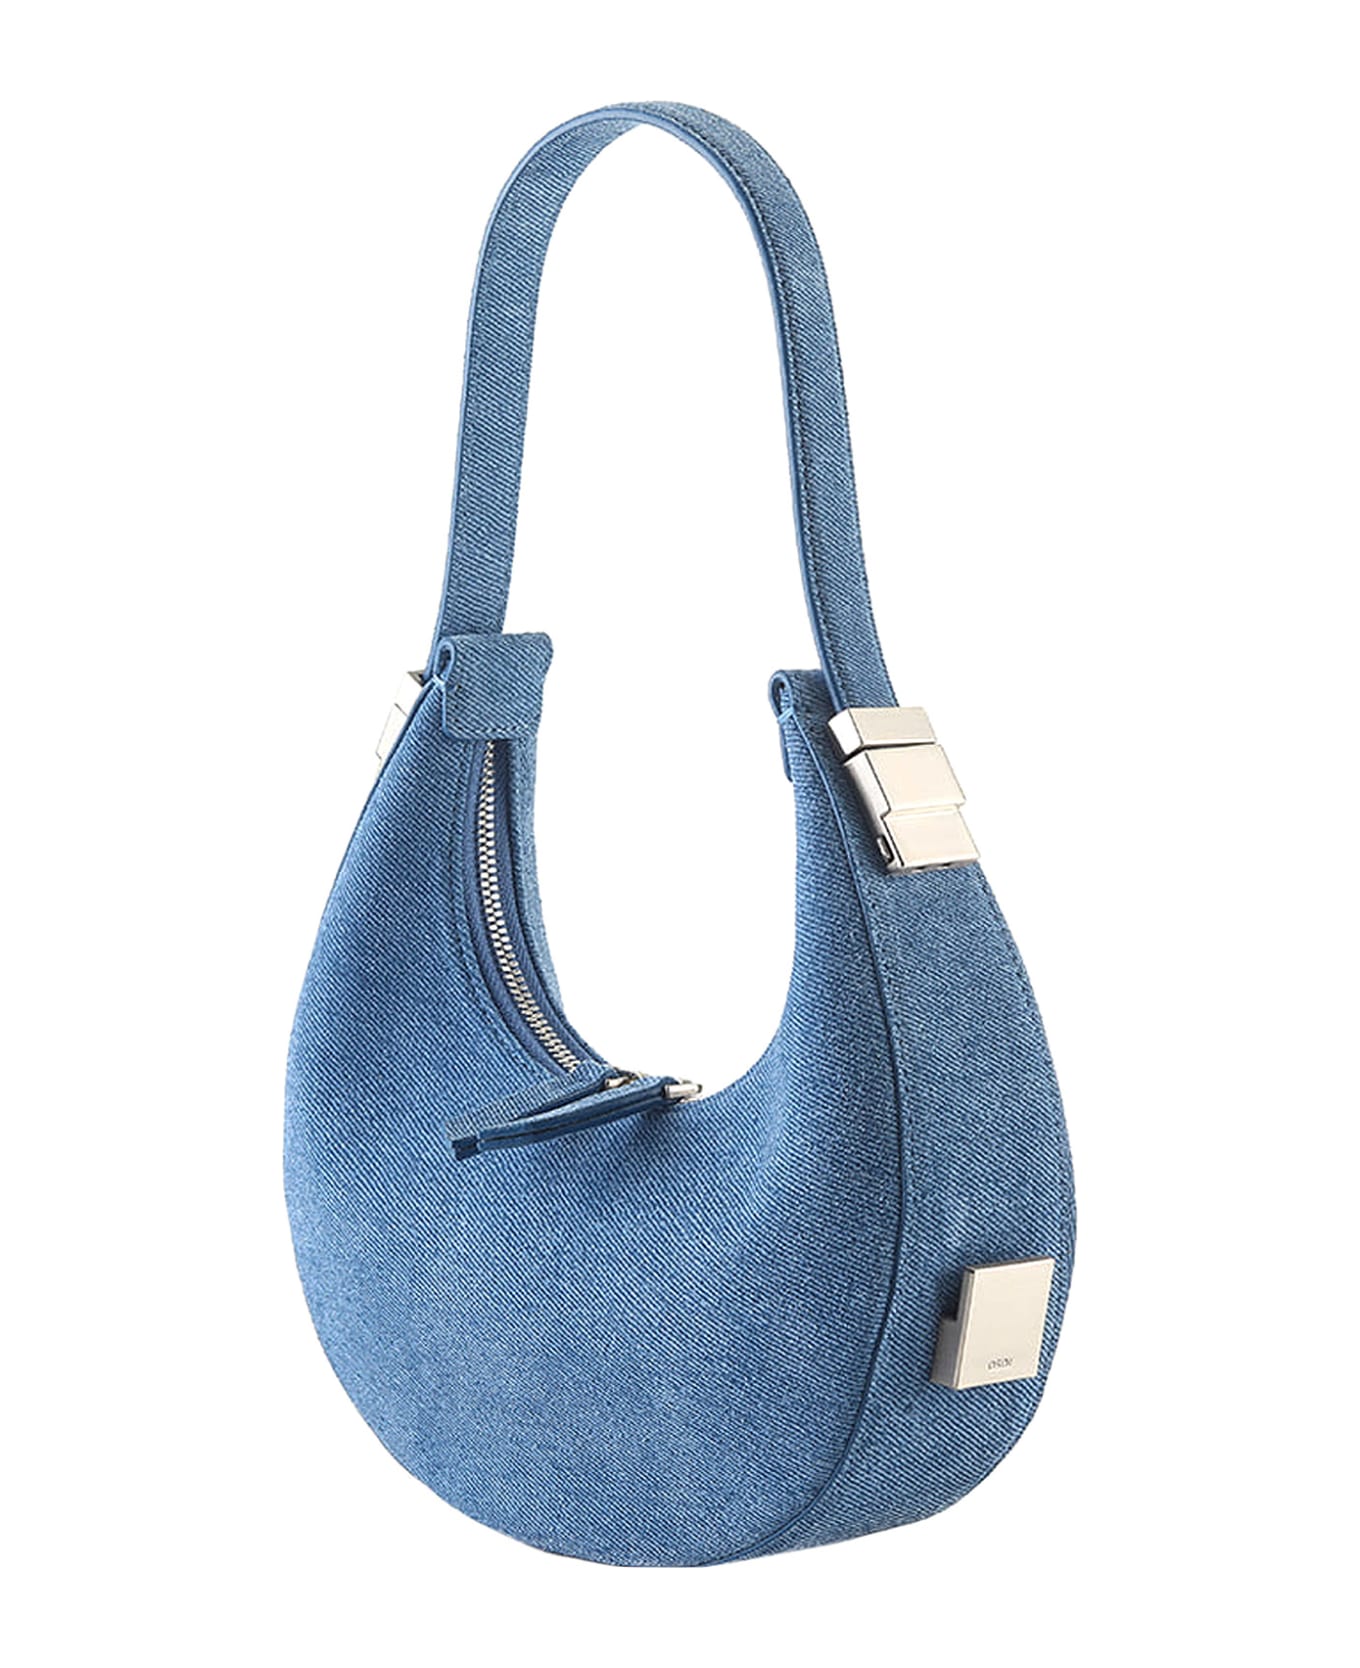 OSOI Toni Mini Shoulder Bag - Blue トートバッグ